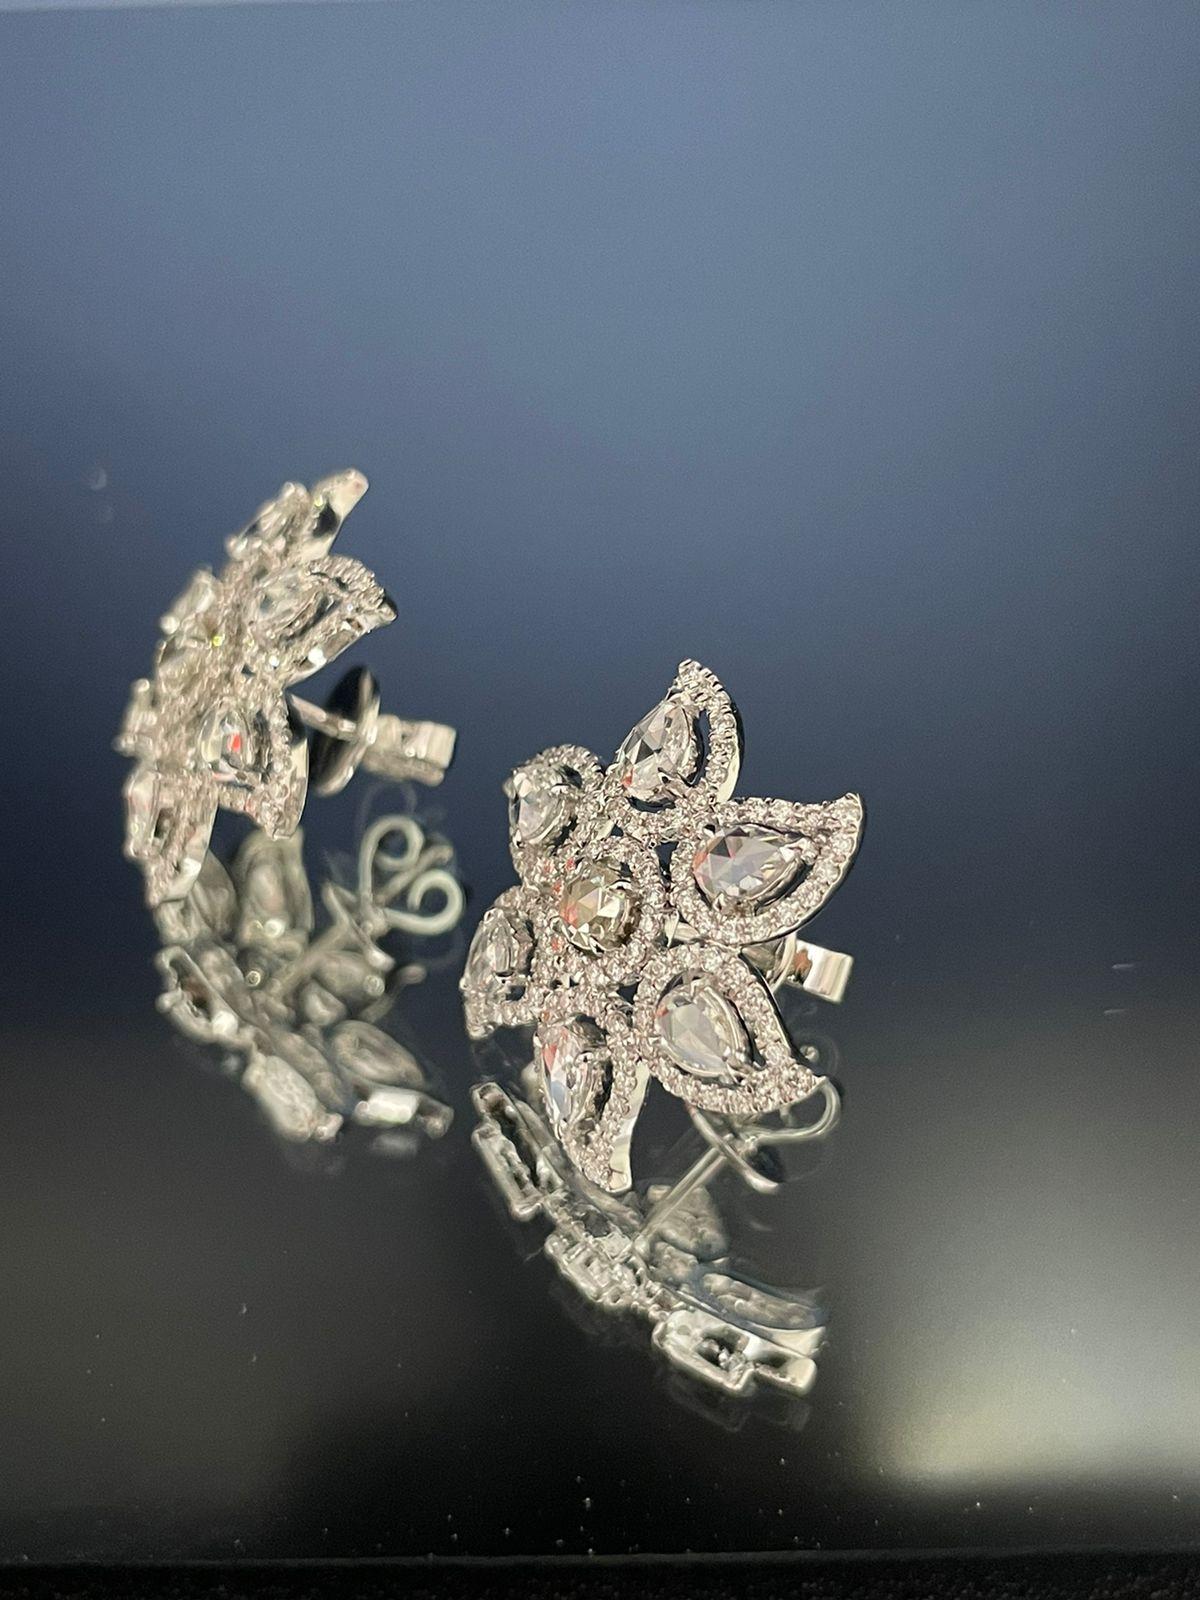 Diamond Rosecut Floral Stud Earrings